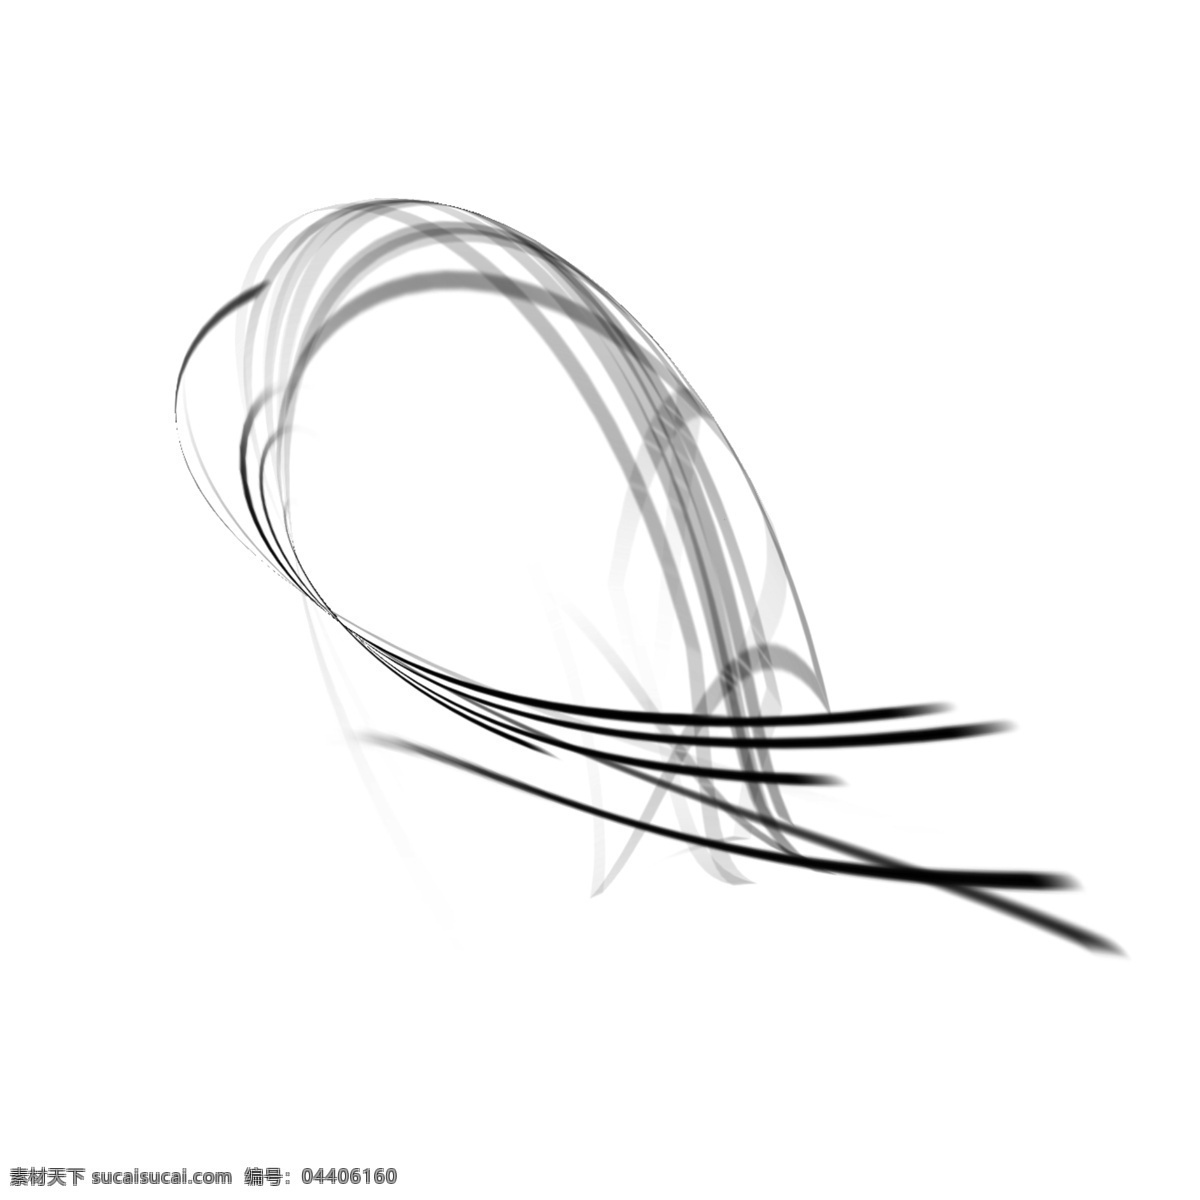 抽象 风格 条条 线 黑色 毛笔 线条 u型曲线 连接 创意 简约 艺术品 装饰 商务 卡通手绘 弯曲 不规则图形